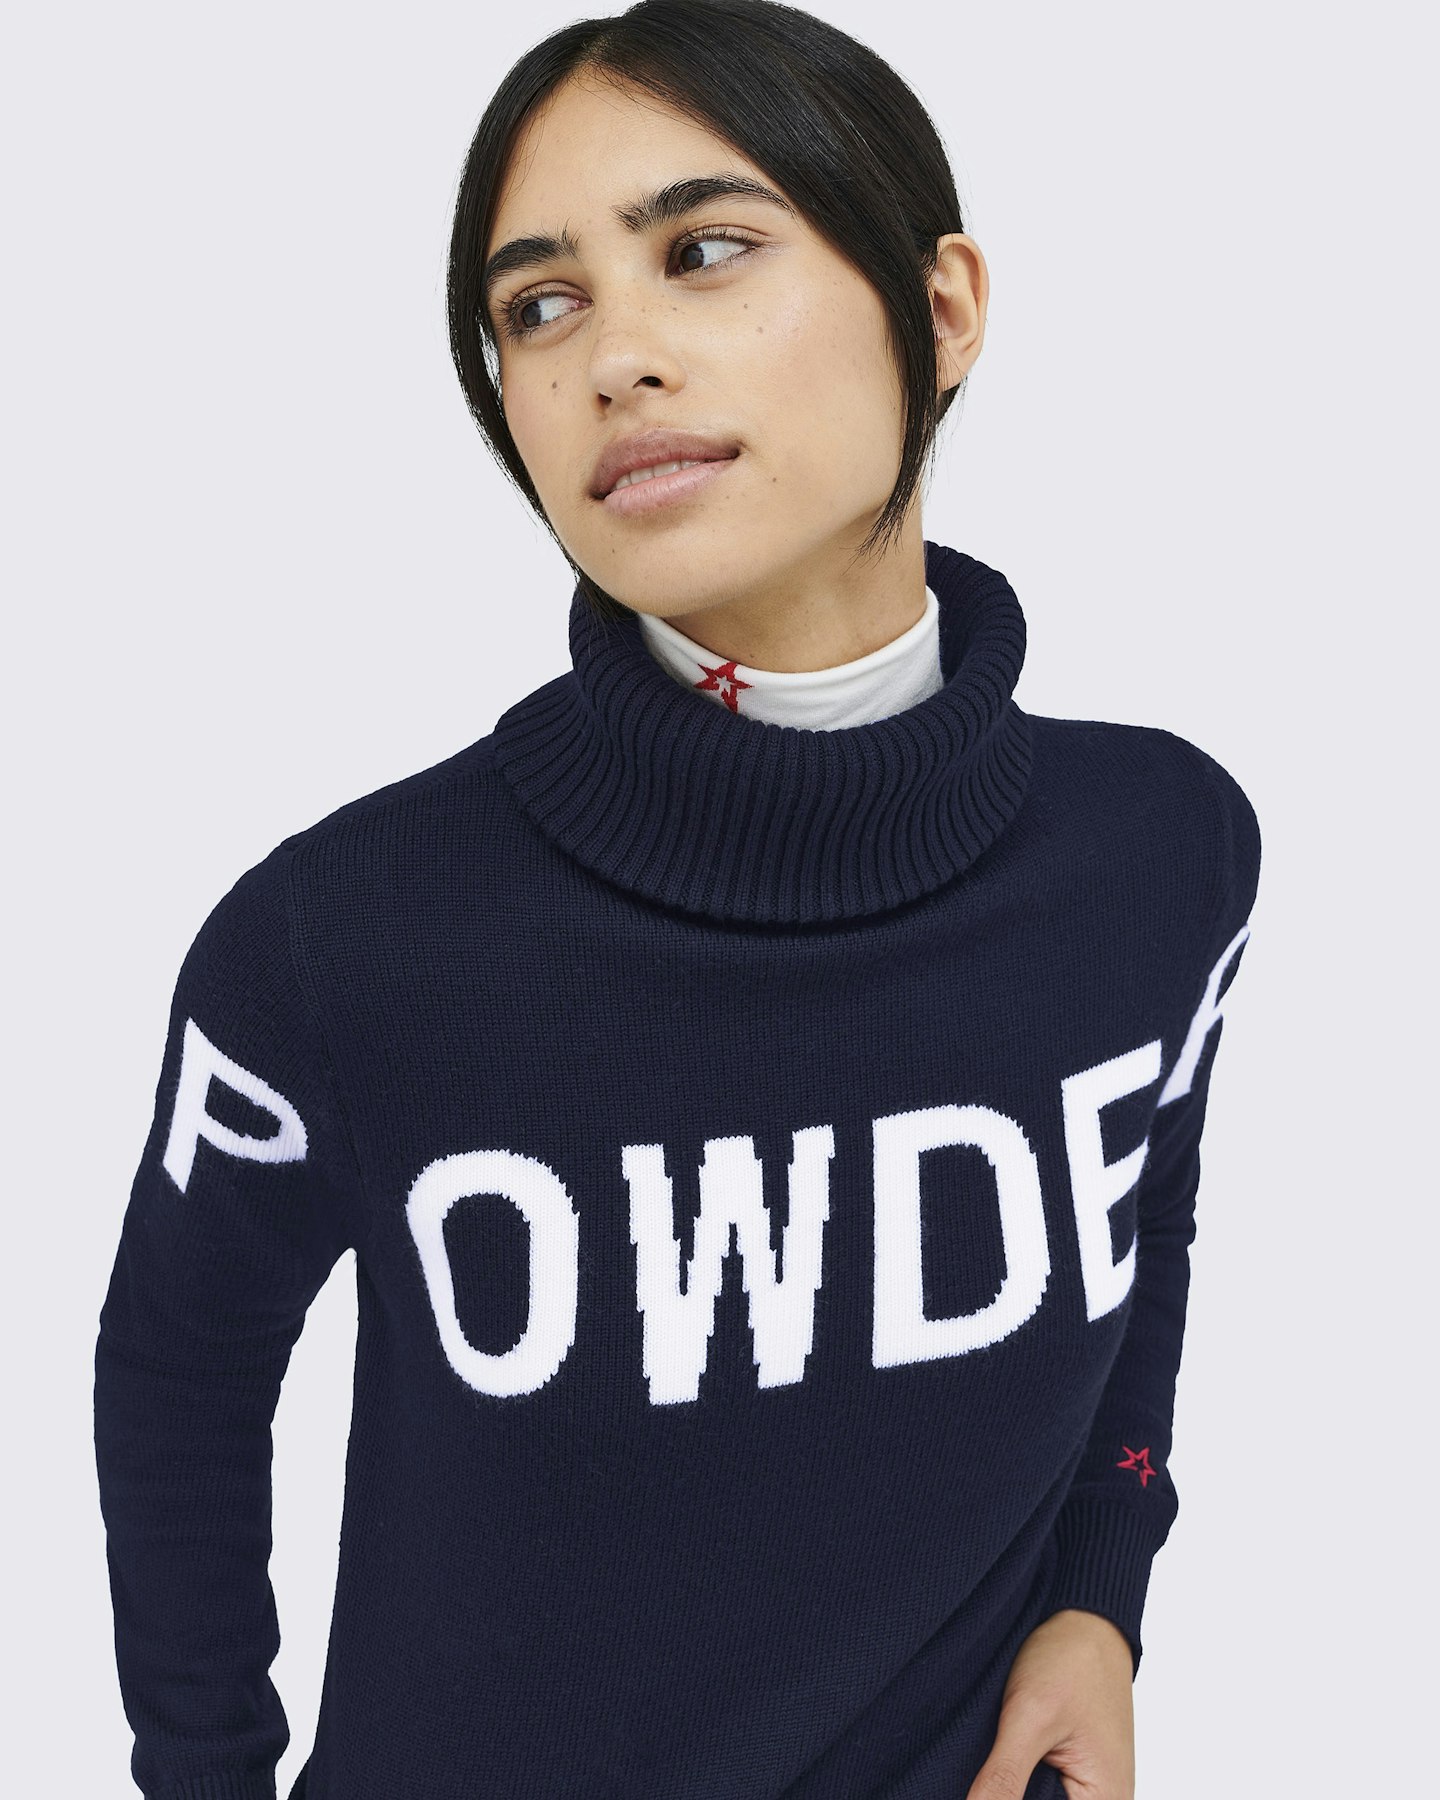 Powder Merino Wool Sweater 4